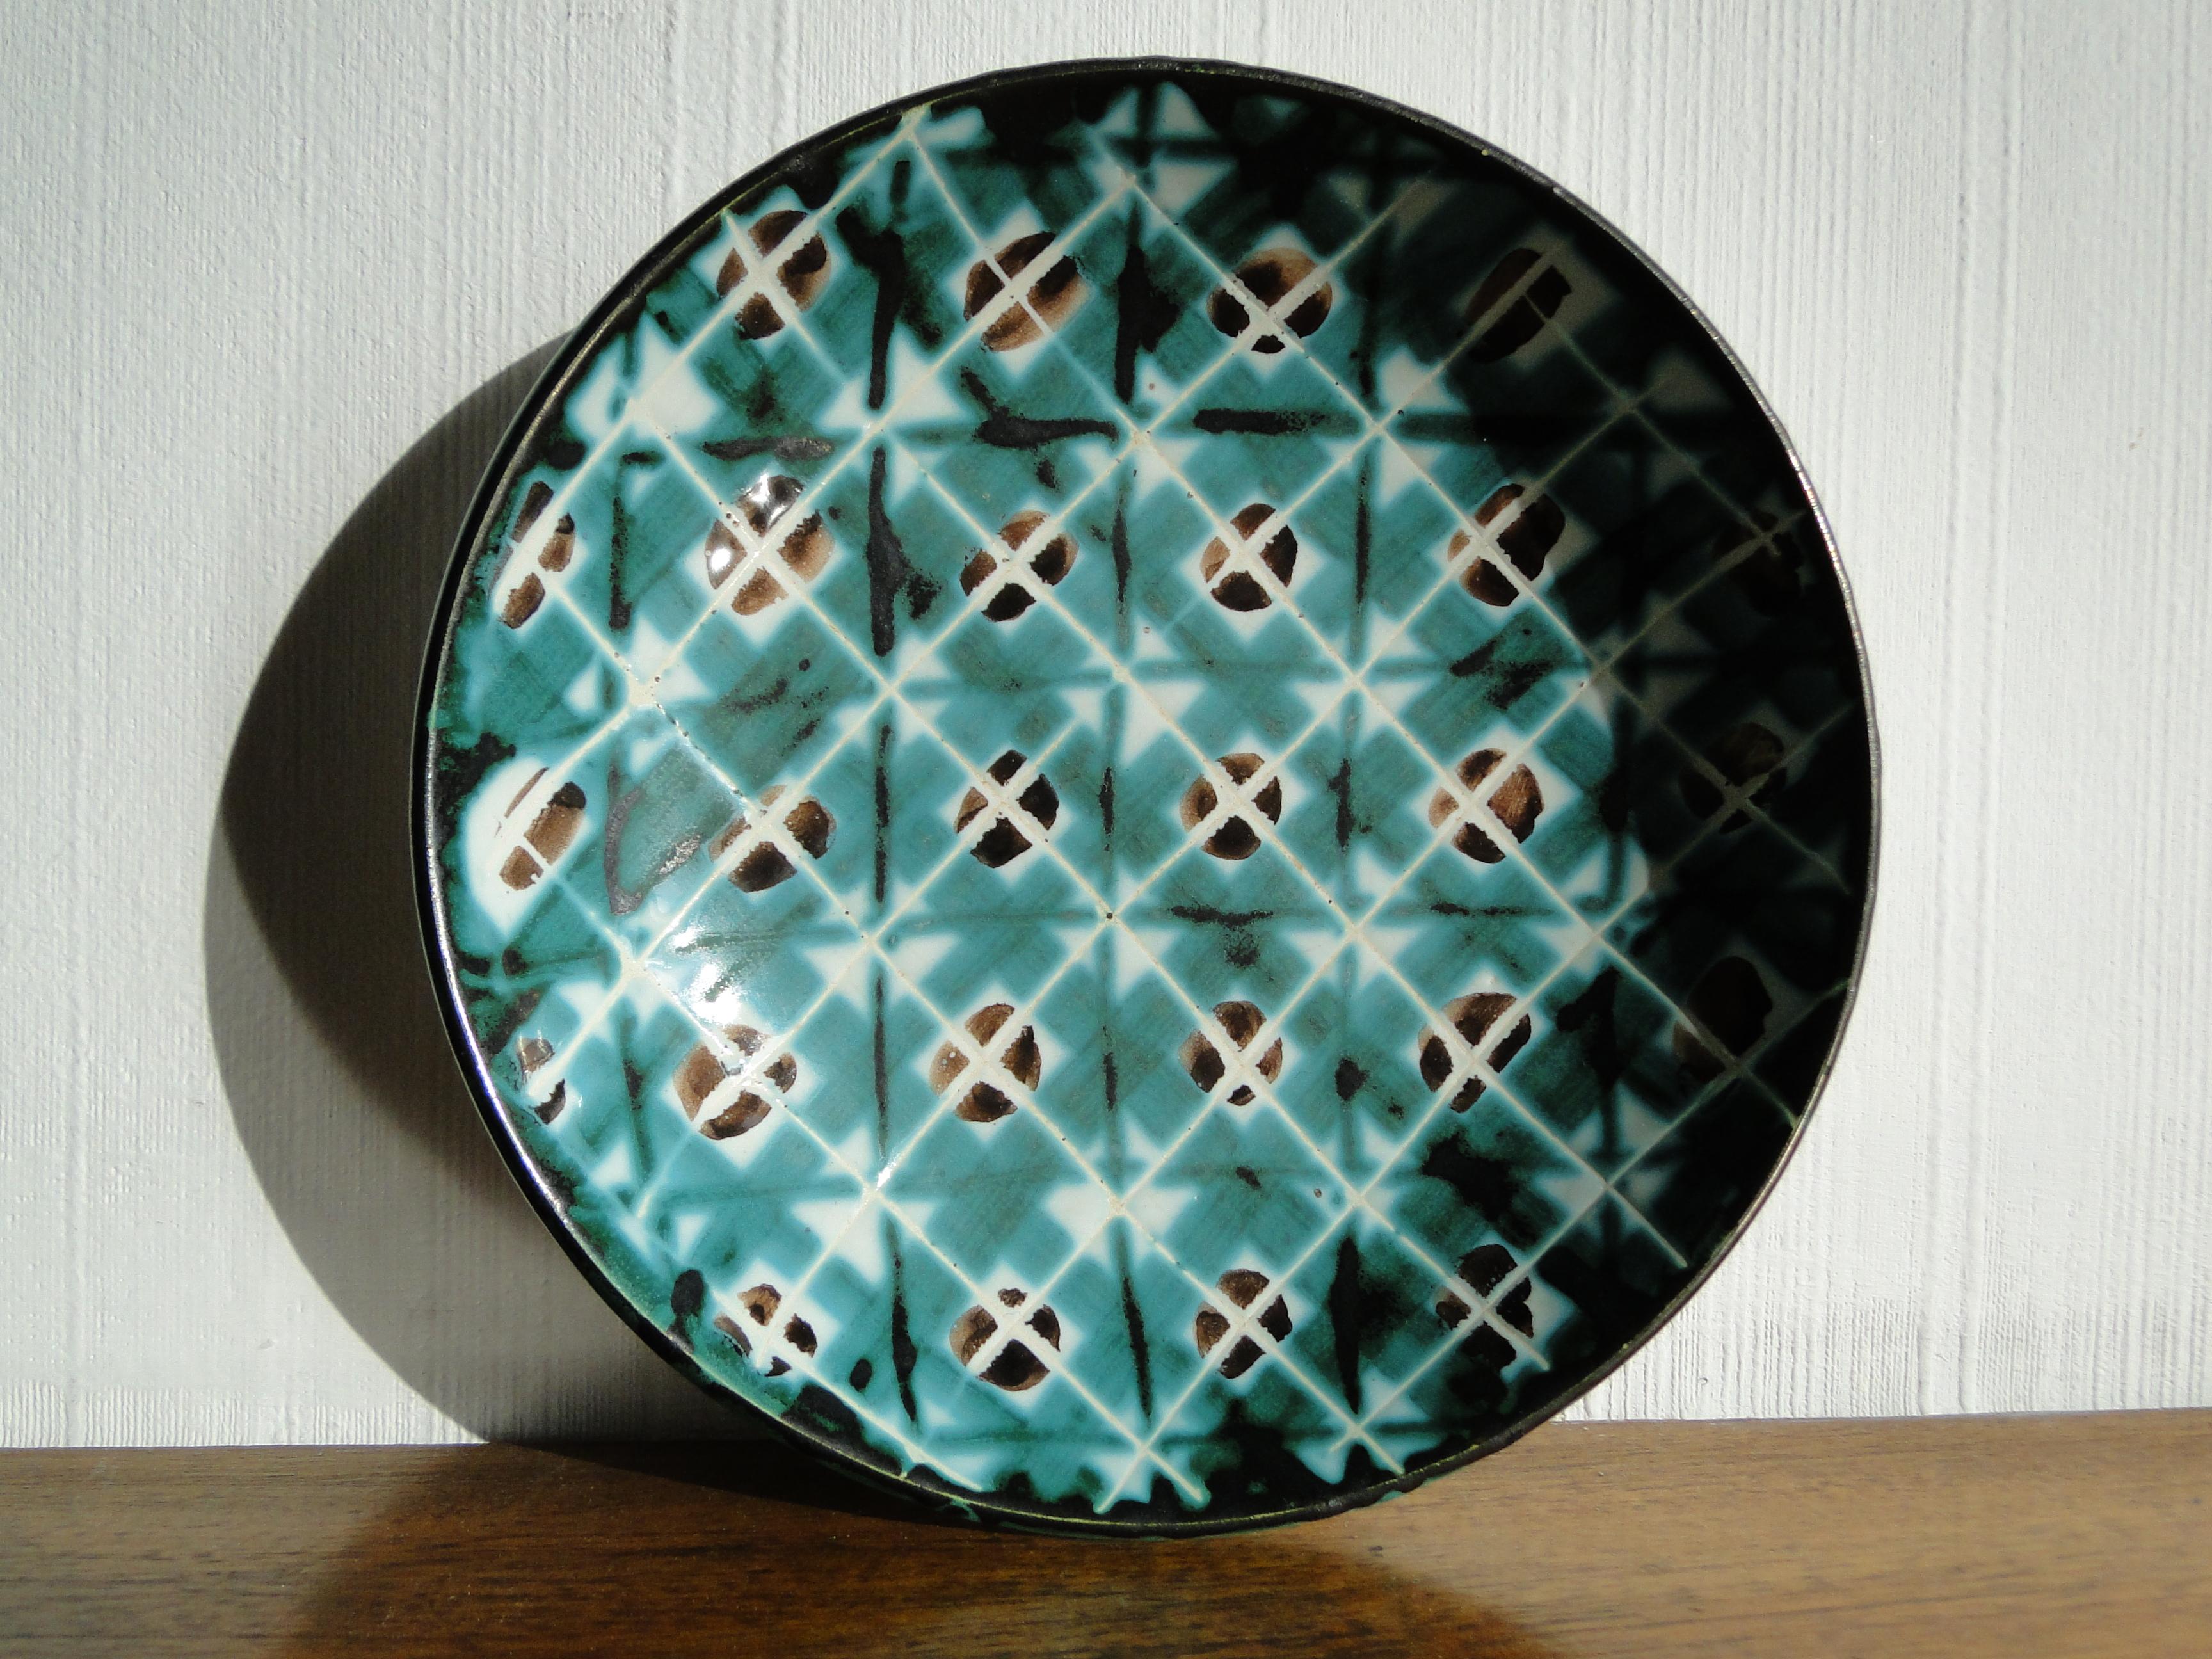 Robert Picault (1919 - 2000)
Französischer Keramiker in Vallauris

Robert Picault hat zur Wiederbelebung der kulinarischen Keramik beigetragen, indem er die traditionellen lokalen Formen, die mit Linien und geometrischen Mustern verziert sind,